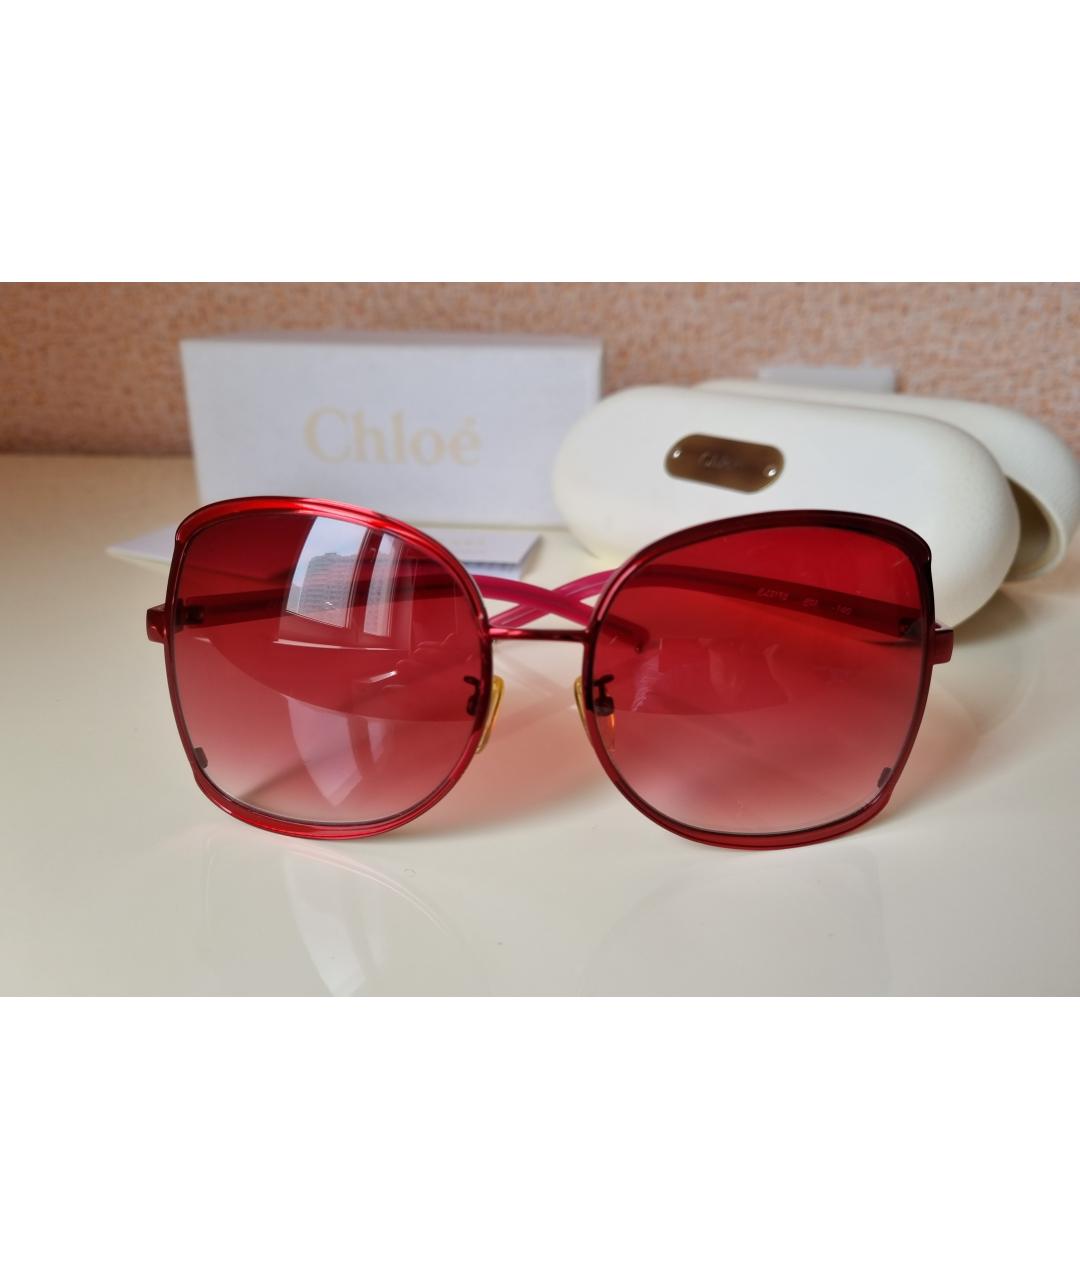 CHLOE Красные металлические солнцезащитные очки, фото 10